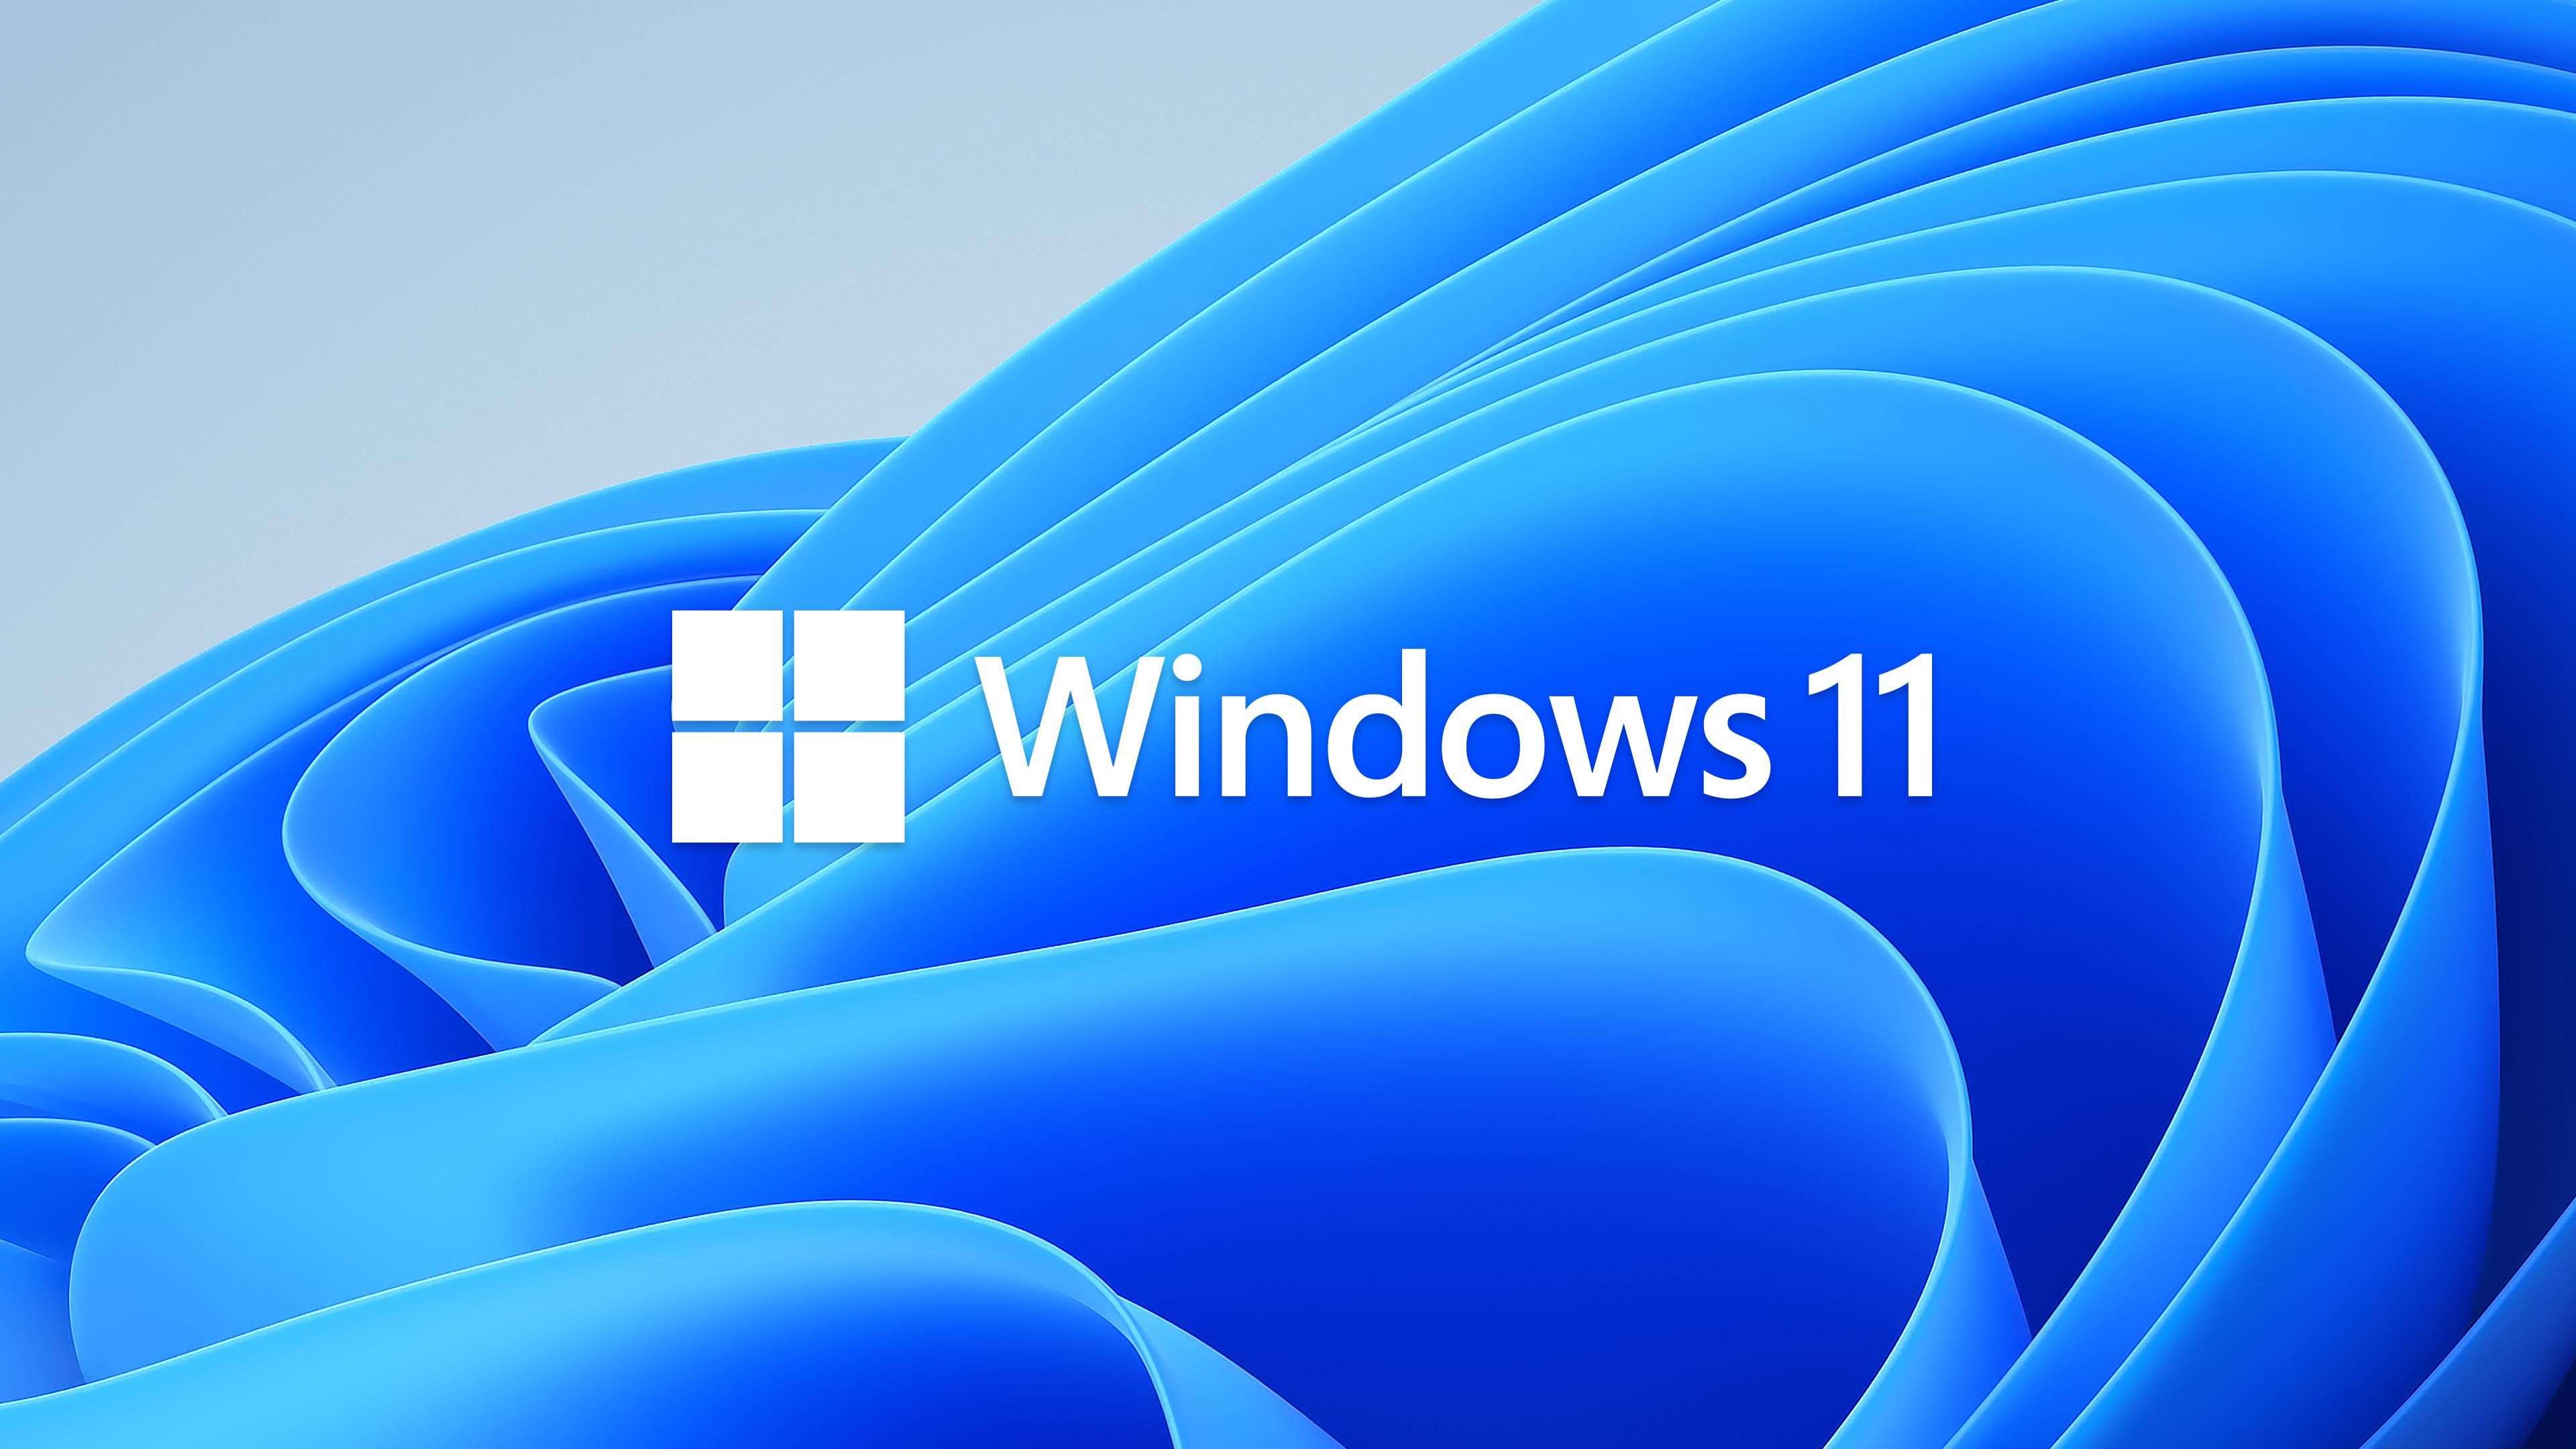 Несмотря на высокие требования, Windows 11 запустили на Raspberry Pi 4